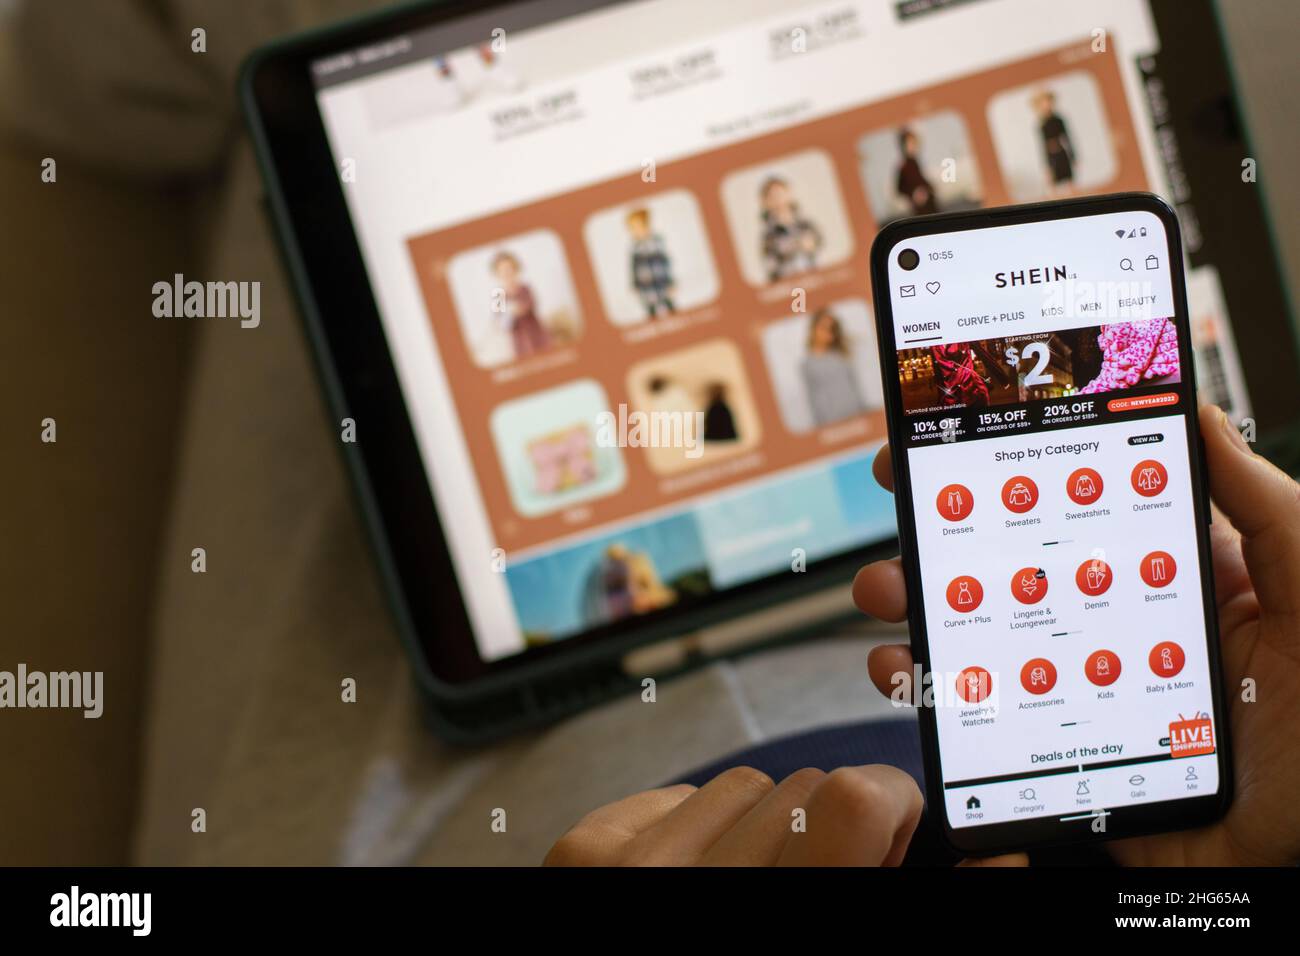 Una donna fa un negozio di abbigliamento per bambini tramite L'app SHEIN sul suo telefono. Shein è un rivenditore cinese di moda veloce online noto per il suo abbigliamento a prezzi accessibili. Foto Stock